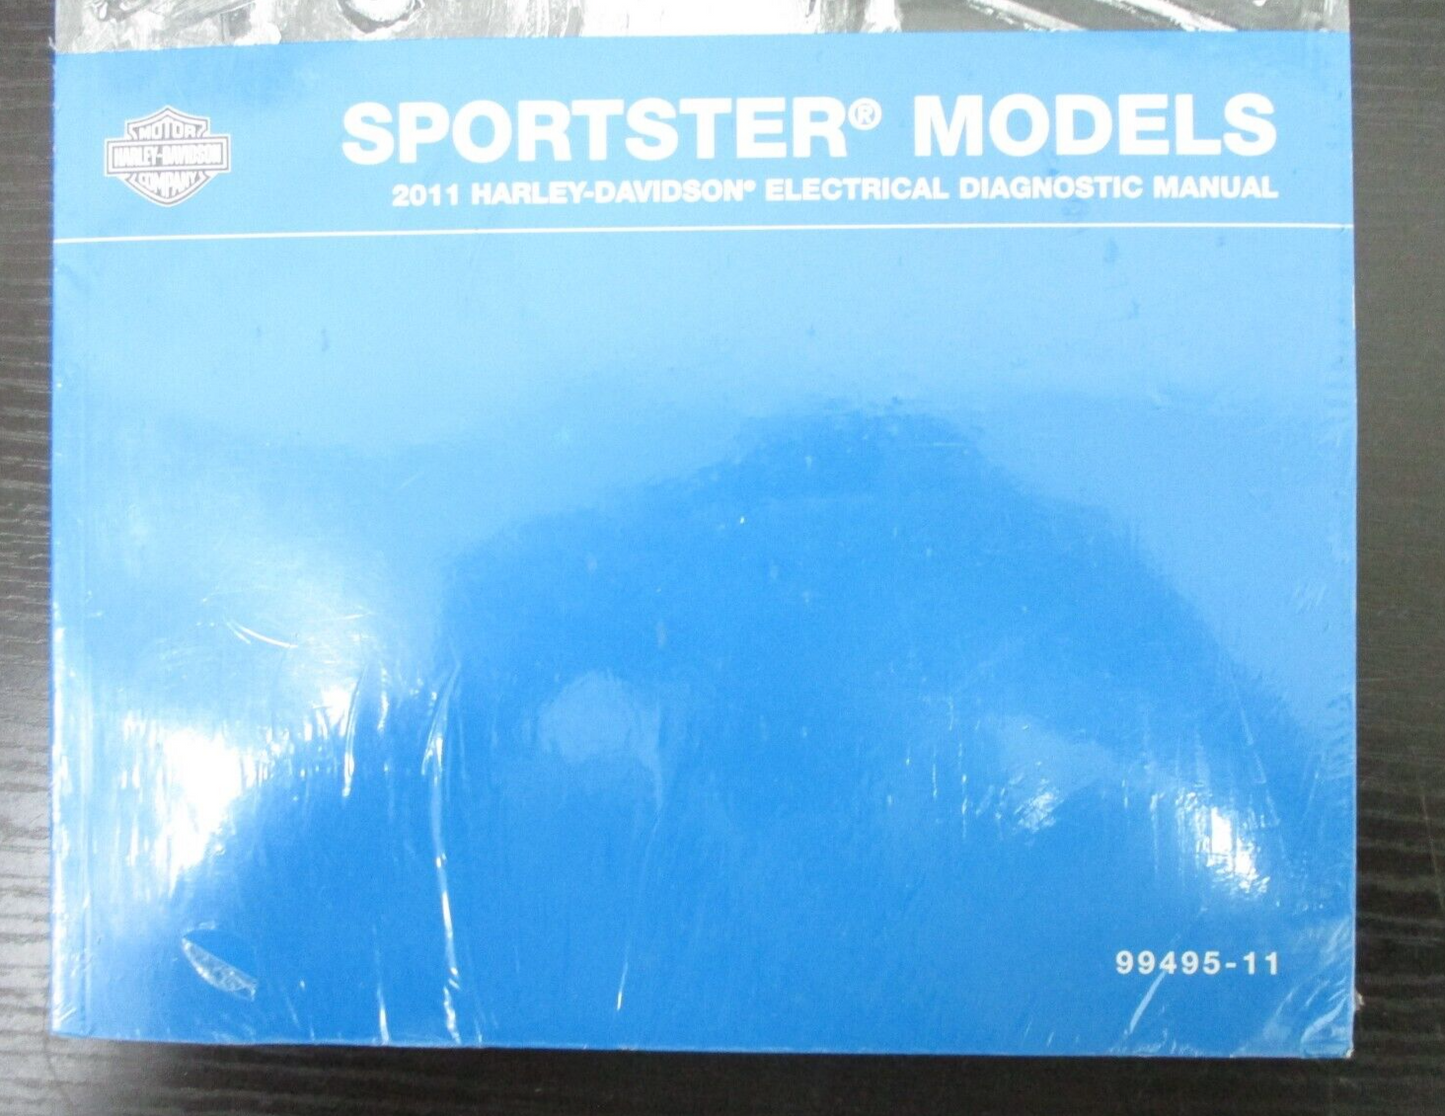 Harley-Davidson Sportster Models 2011 Electrical Diagnostic Manual  99495-11